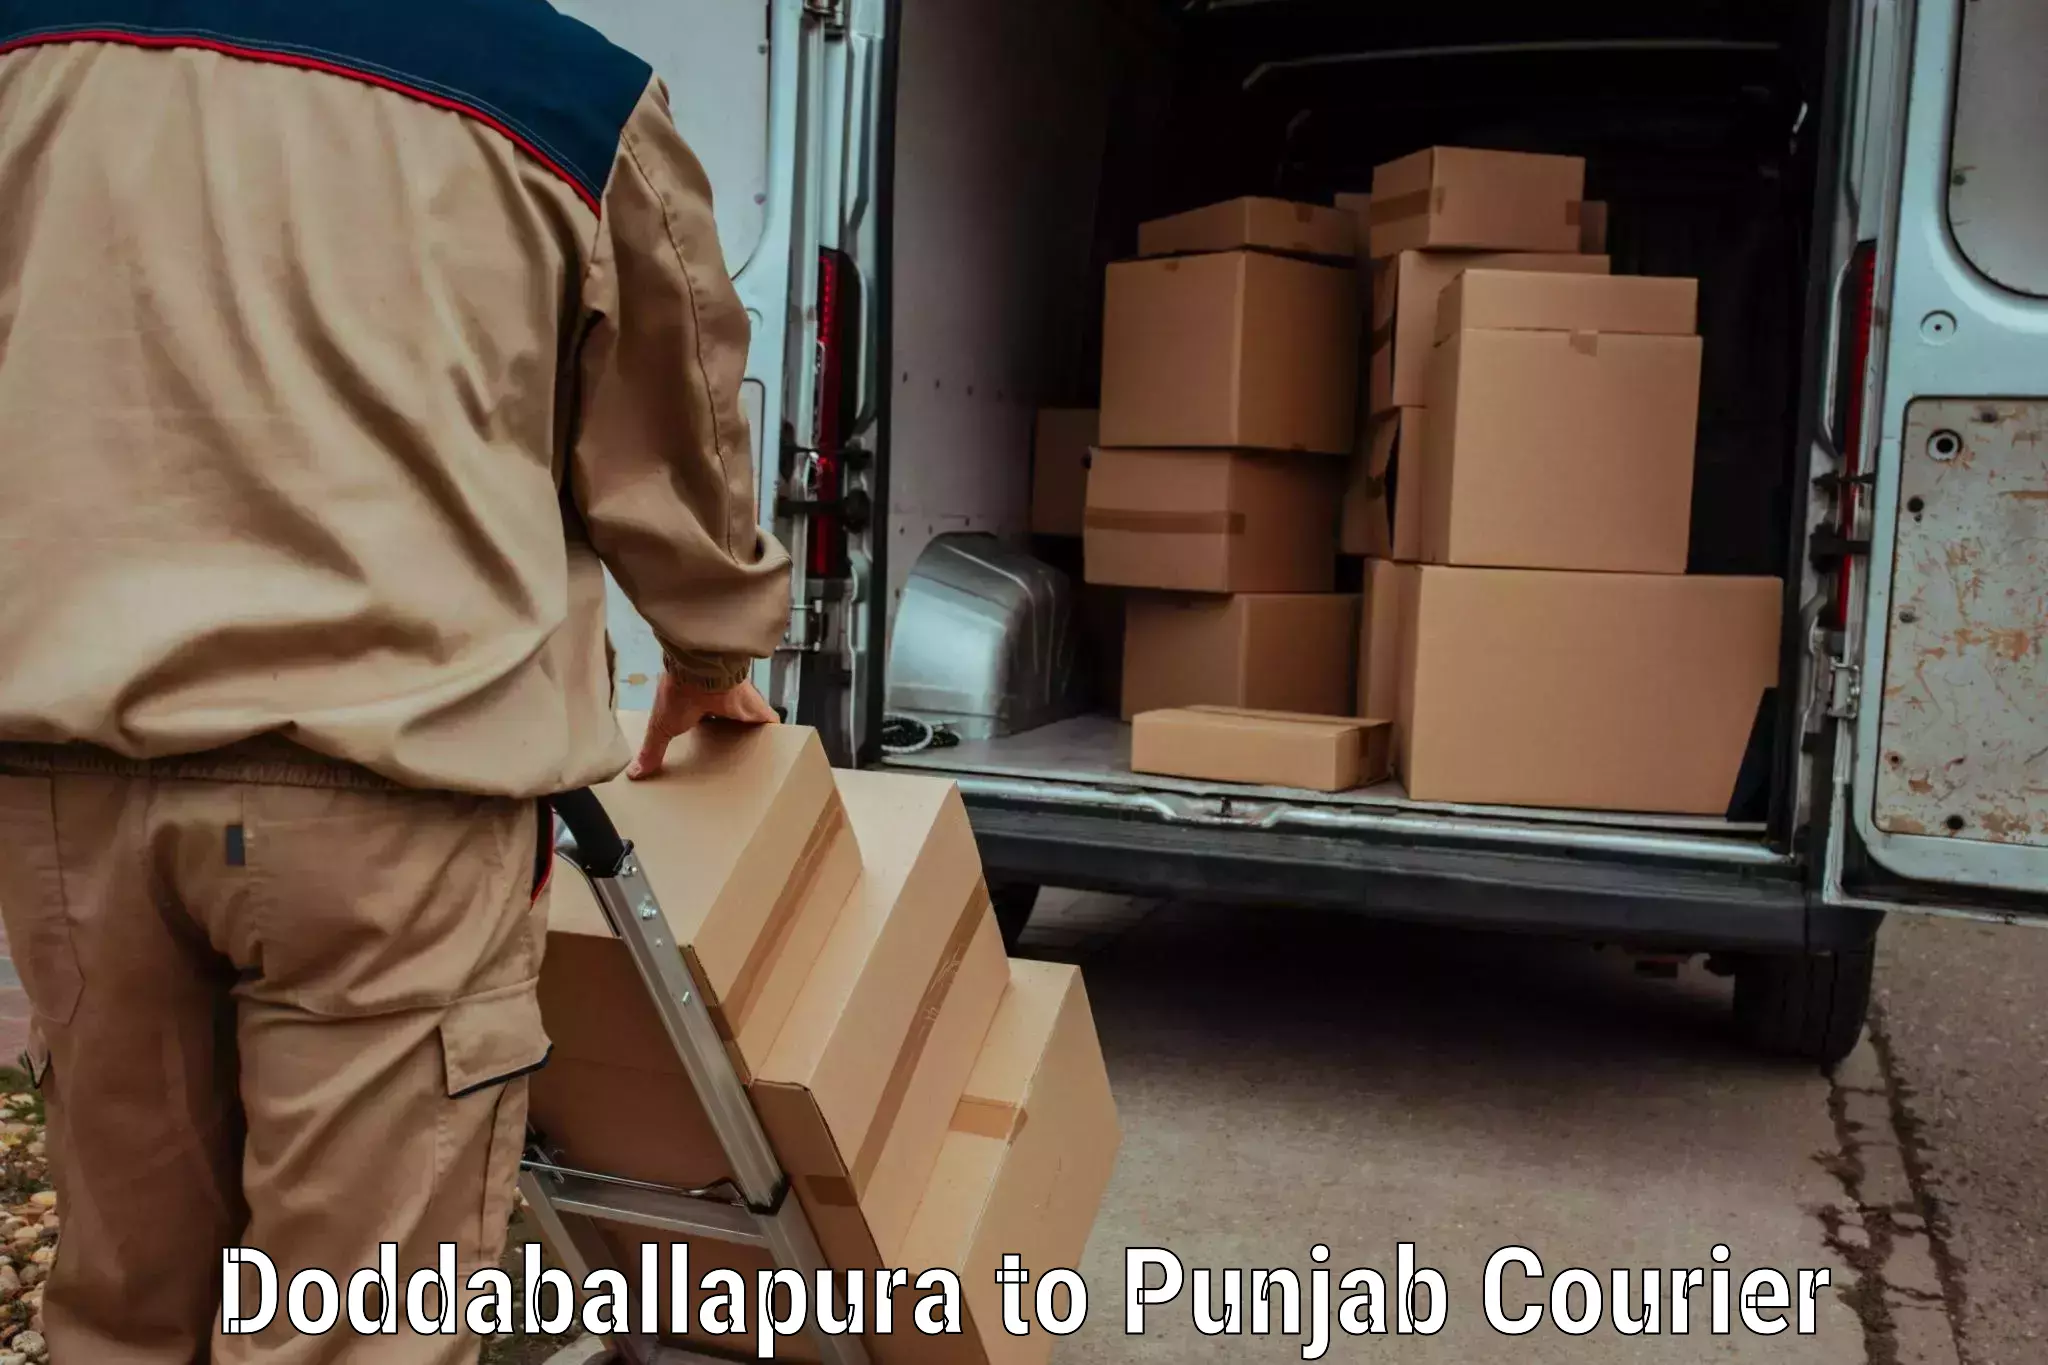 Courier insurance in Doddaballapura to Zirakpur